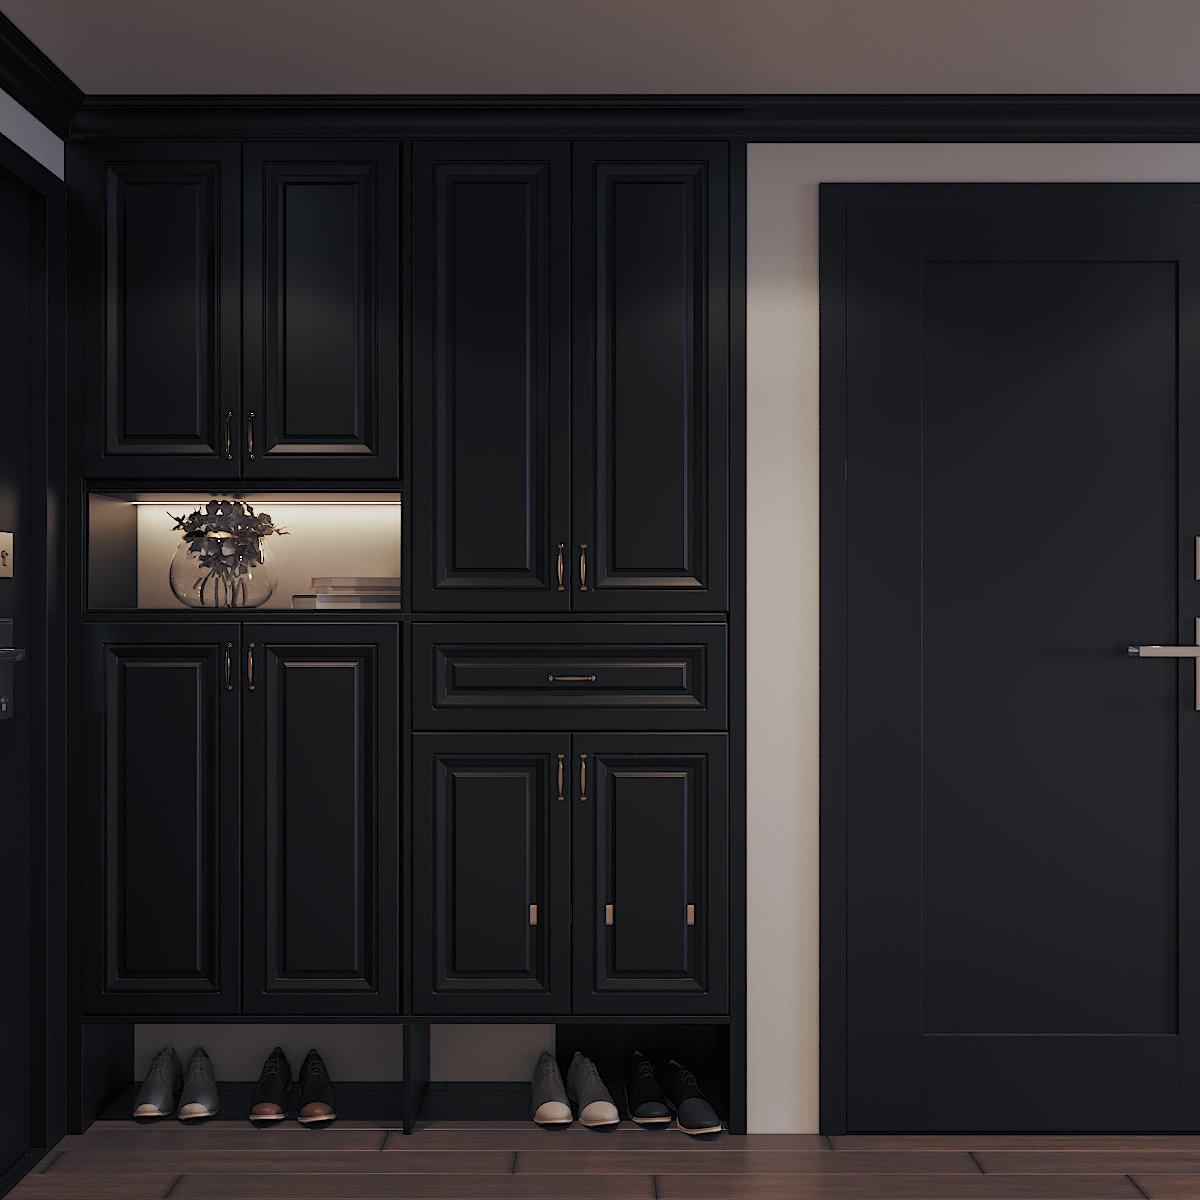 Mảng tường cạnh lối vào căn hộ được tận dụng để bố trí hệ tủ lưu trữ giày dép gọn đẹp, tông màu đen sang trọng, sạch sẽ.